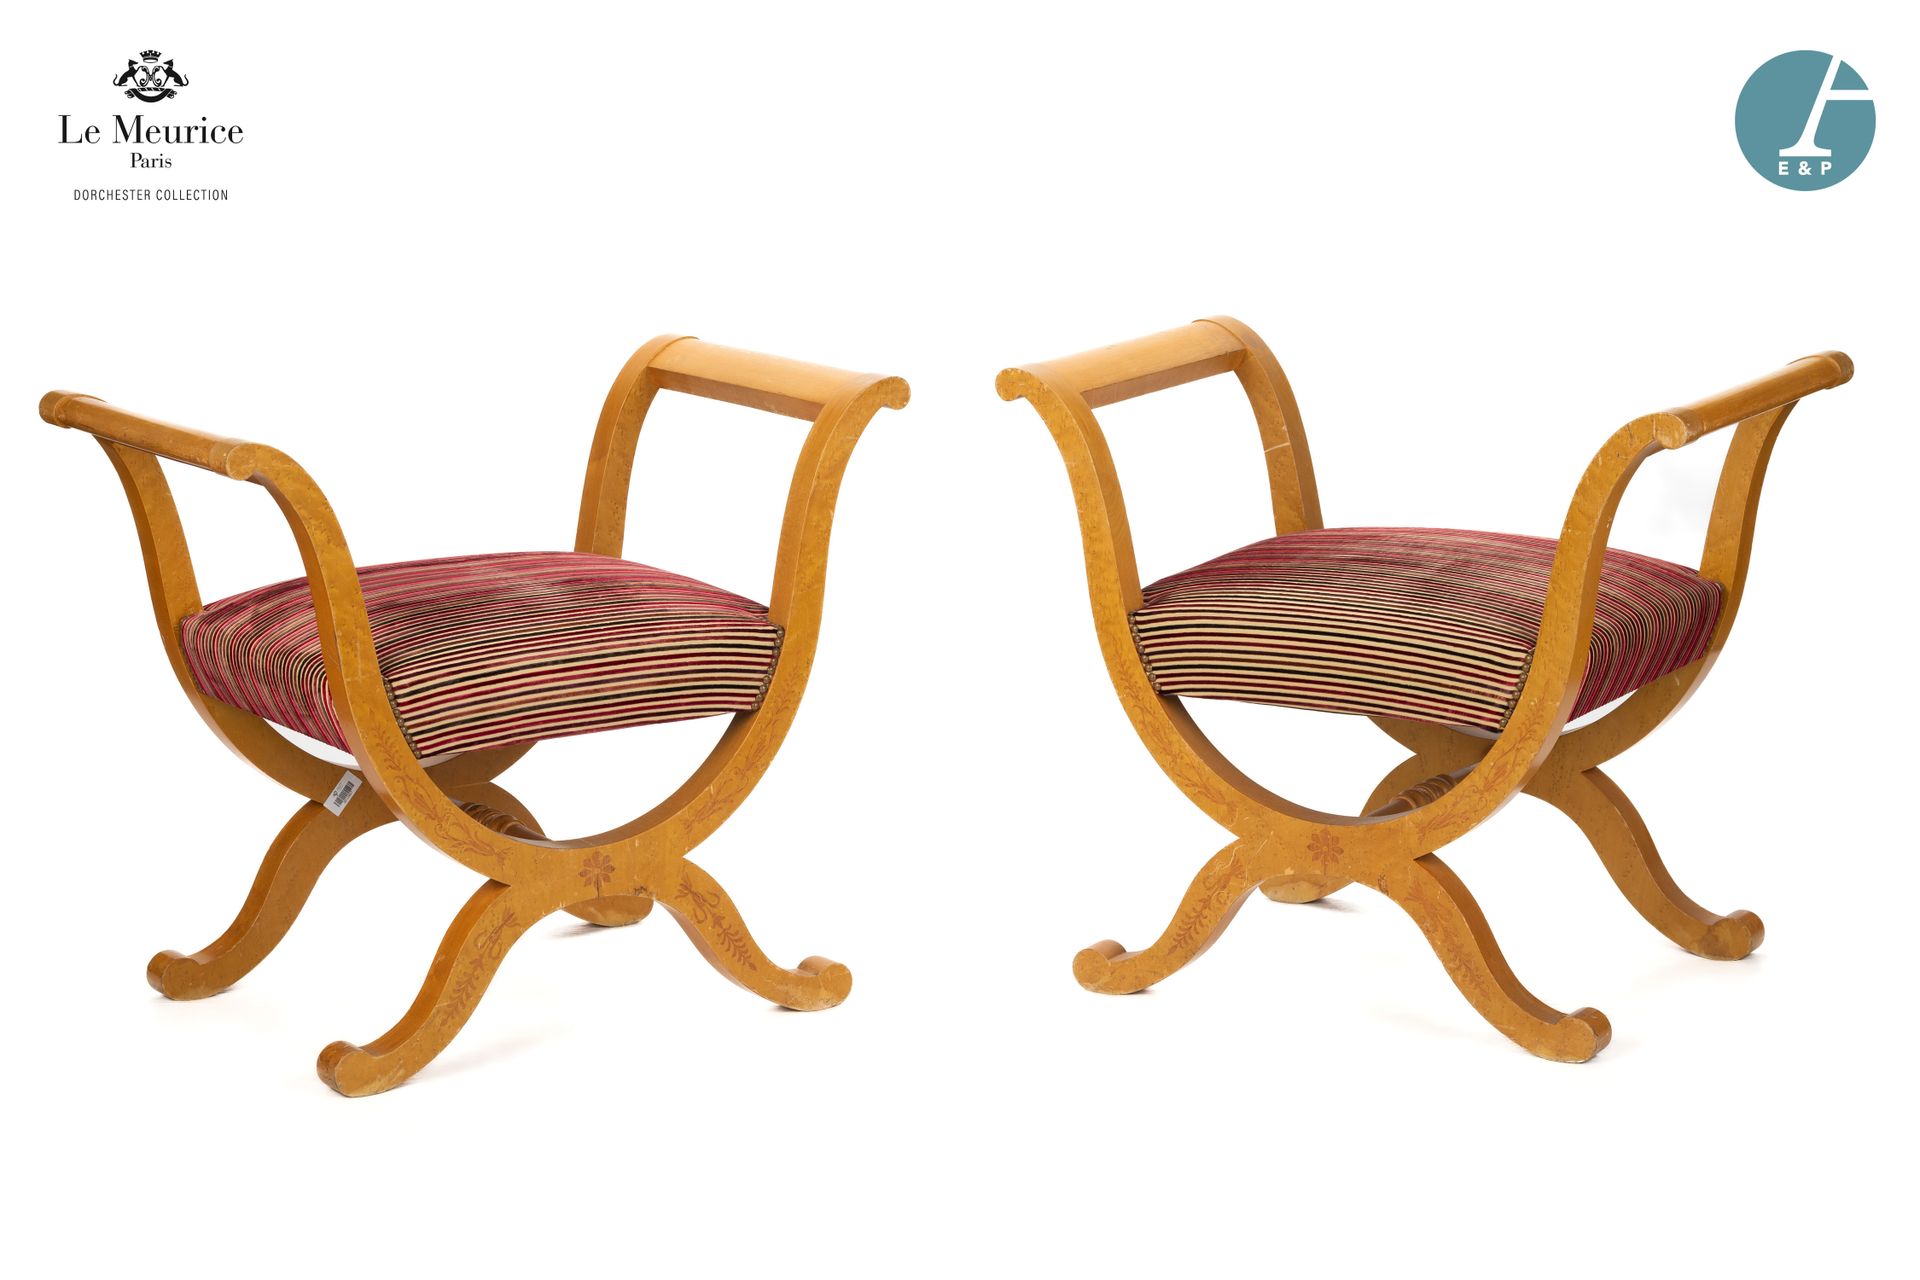 Null 来自Le Meurice酒店。
一对木质和金黄色木皮的曲尺椅，装饰有花和植物茎的镶嵌，红色、酒红色和梅色天鹅绒条纹织物的铆钉装饰。
复原风格。现代作品&hellip;